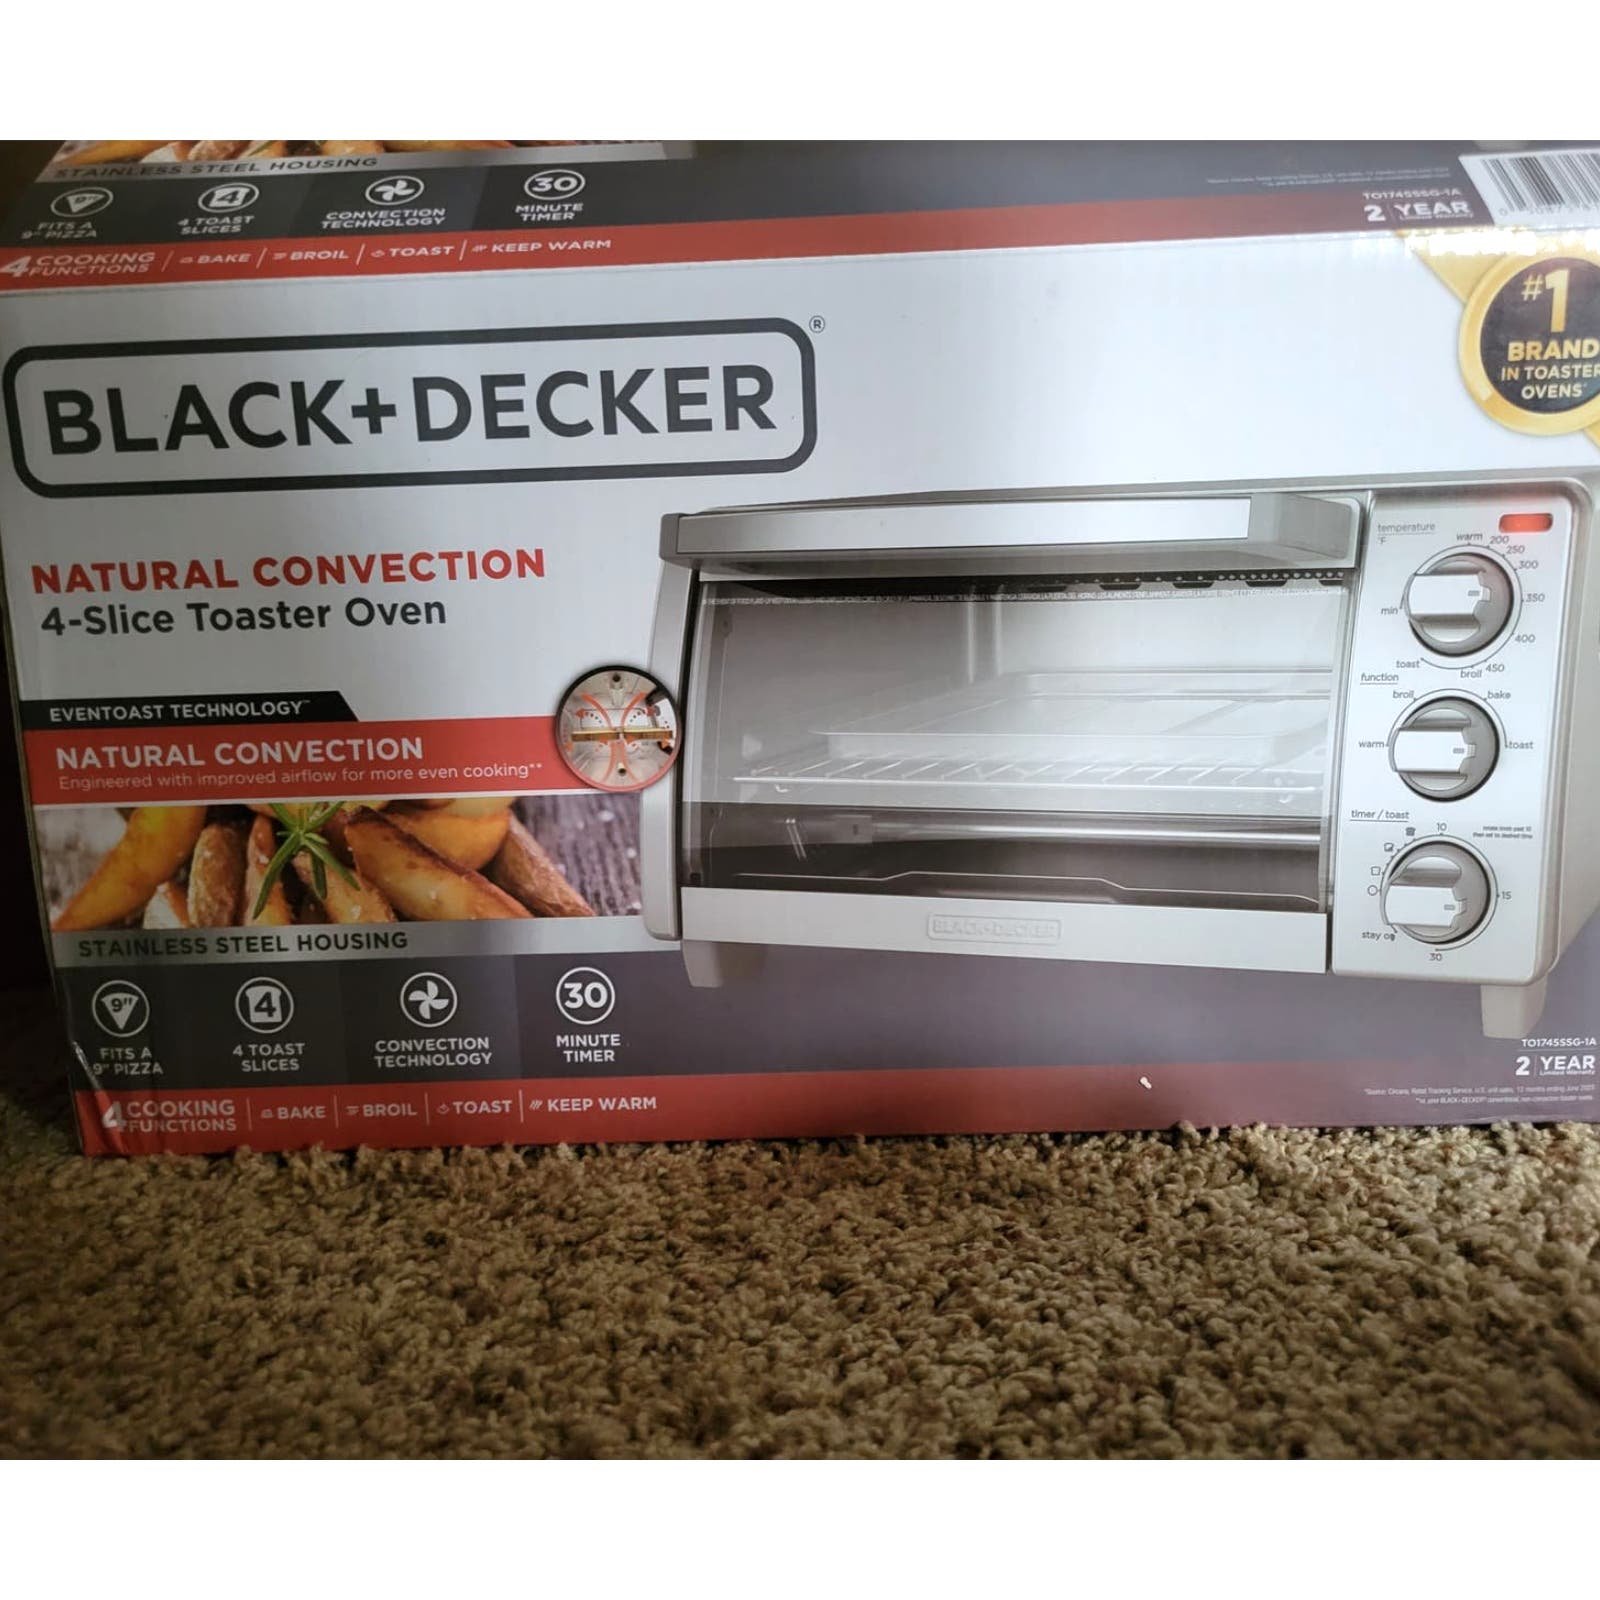 NWOT BLACK+DECKER 4-Slice Toaster Oven, Convection Bake